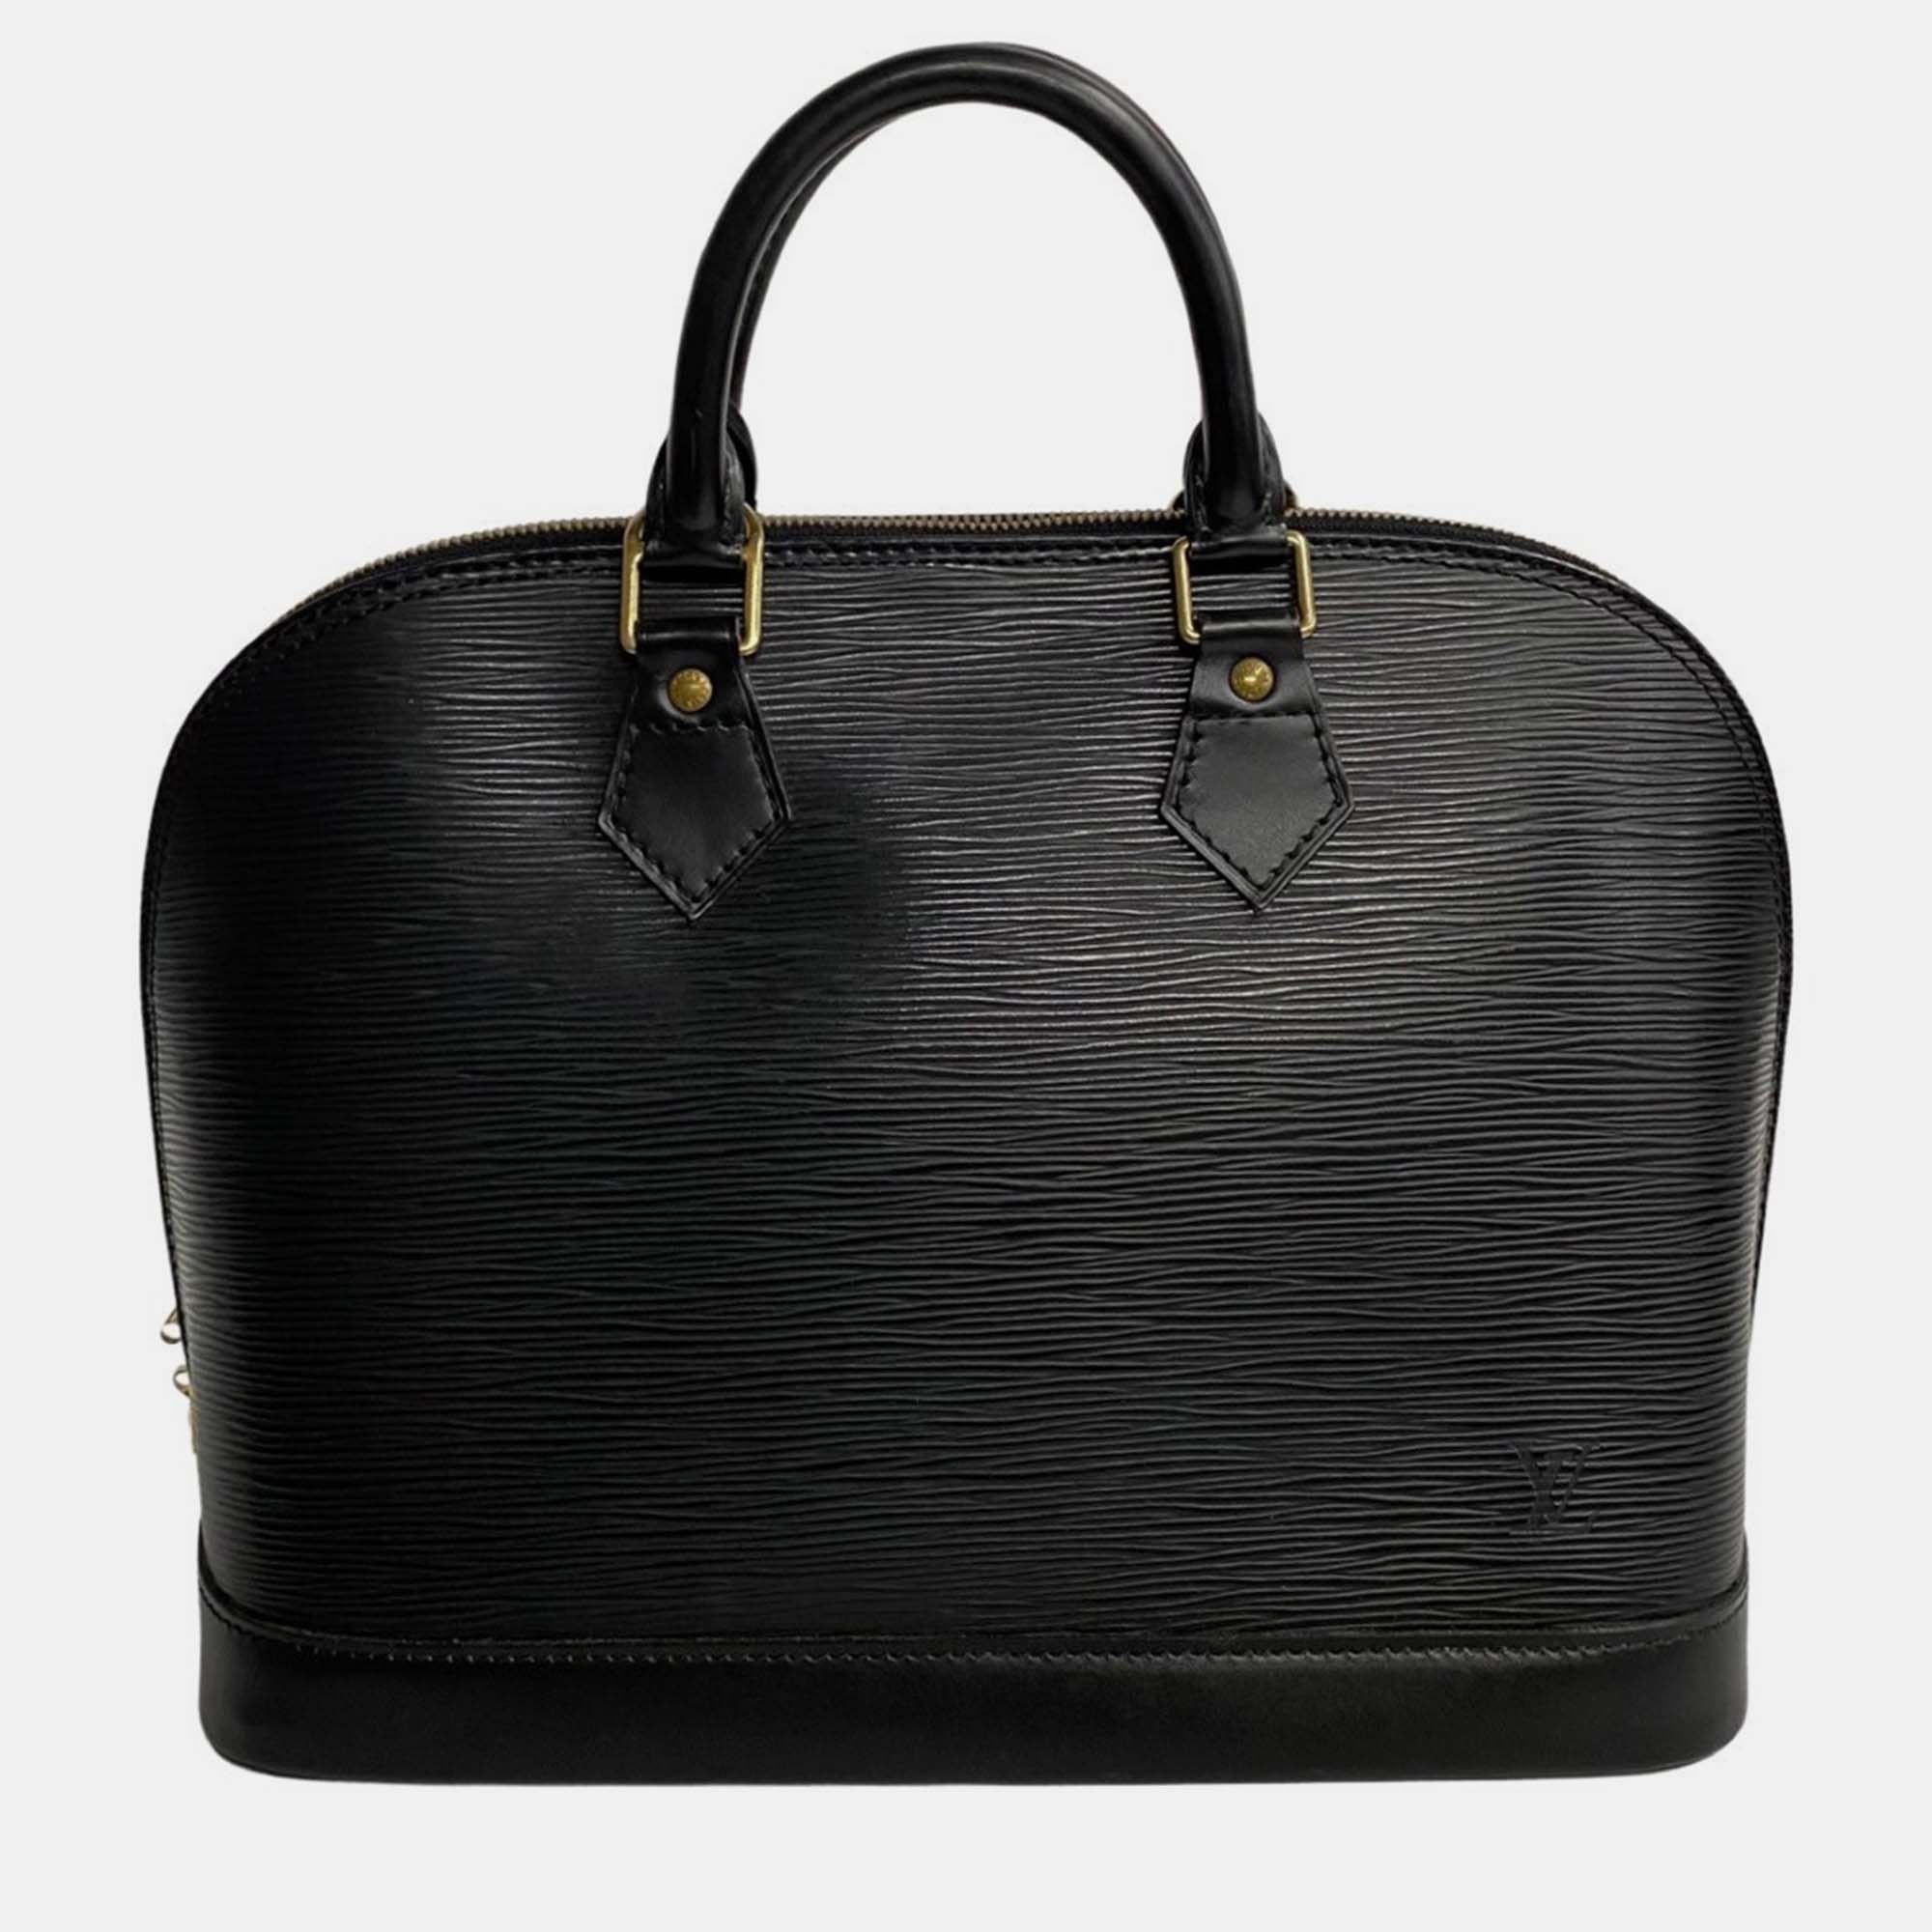 Louis vuitton black leather pm alma satchel bag